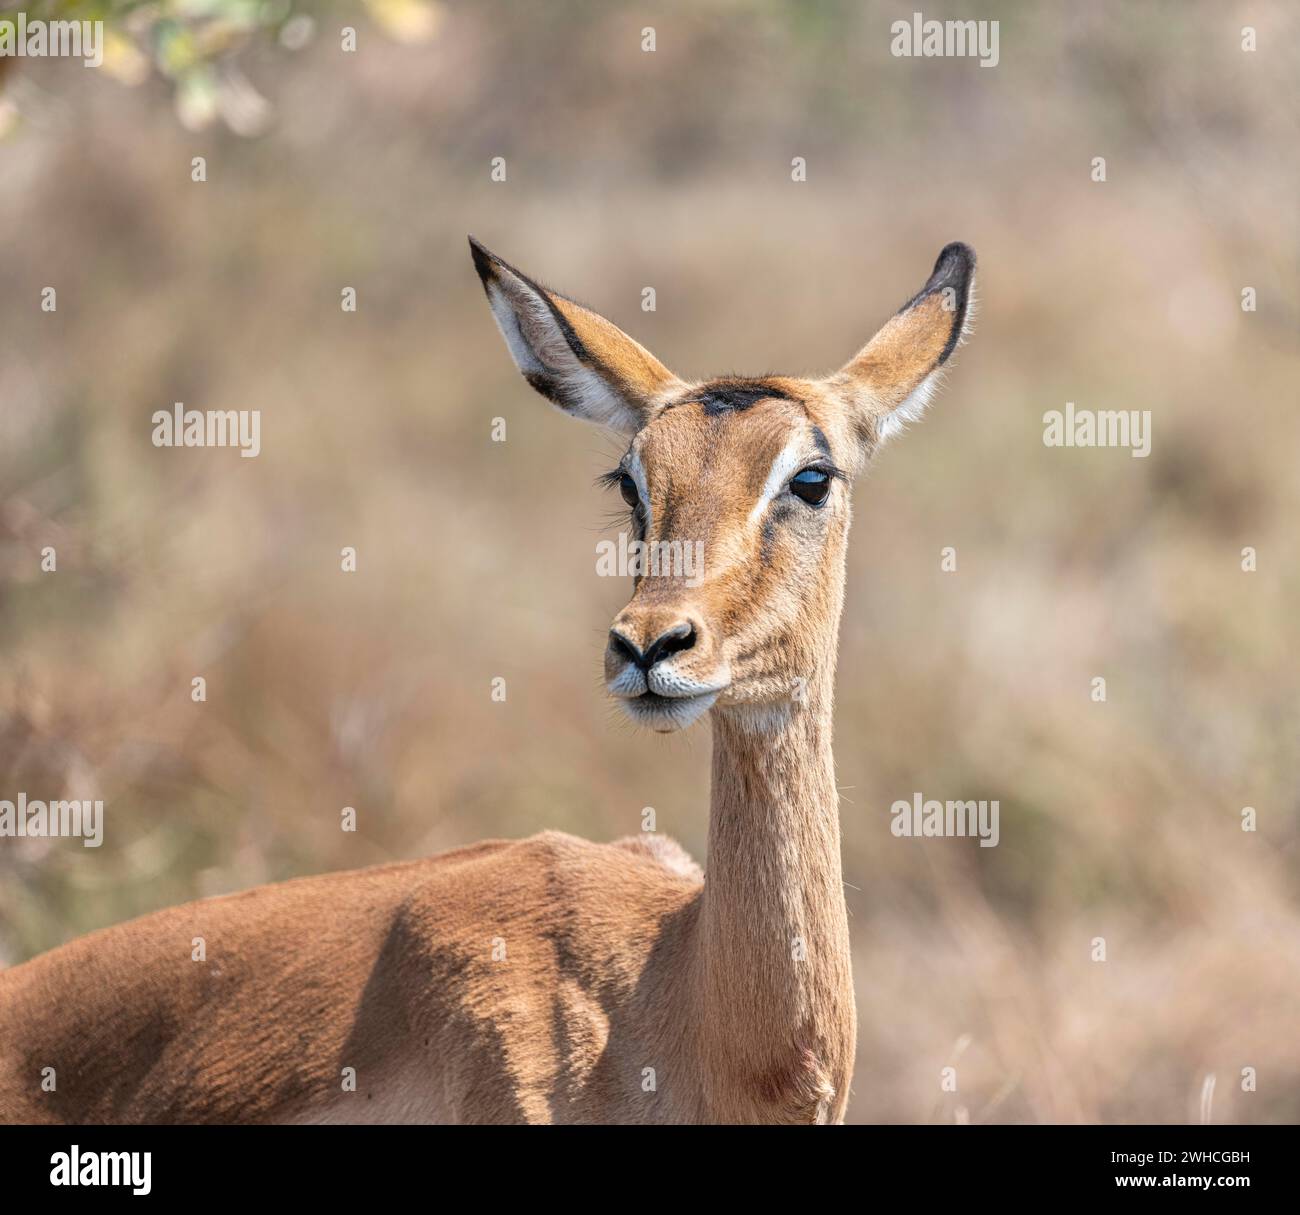 Impala (Aepyceros melampus), antilope heeler noire, femelle, portrait d'animaux, parc national Kruger, Afrique du Sud Banque D'Images